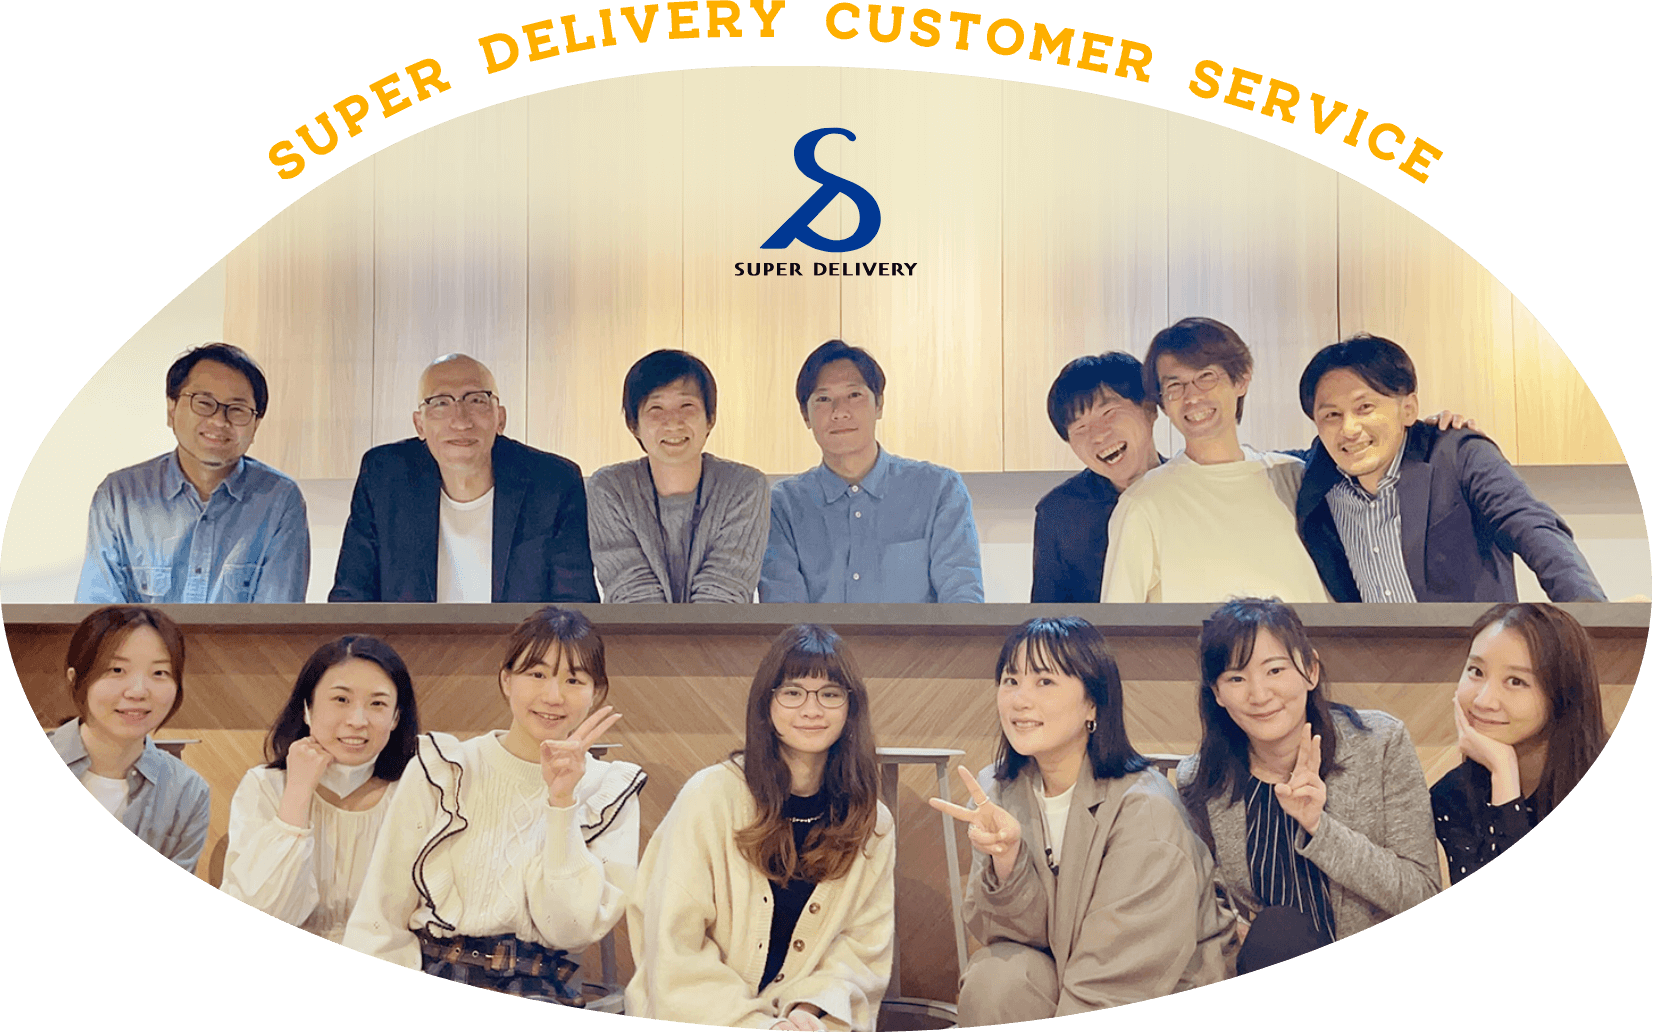 Super Delivery Customer Service